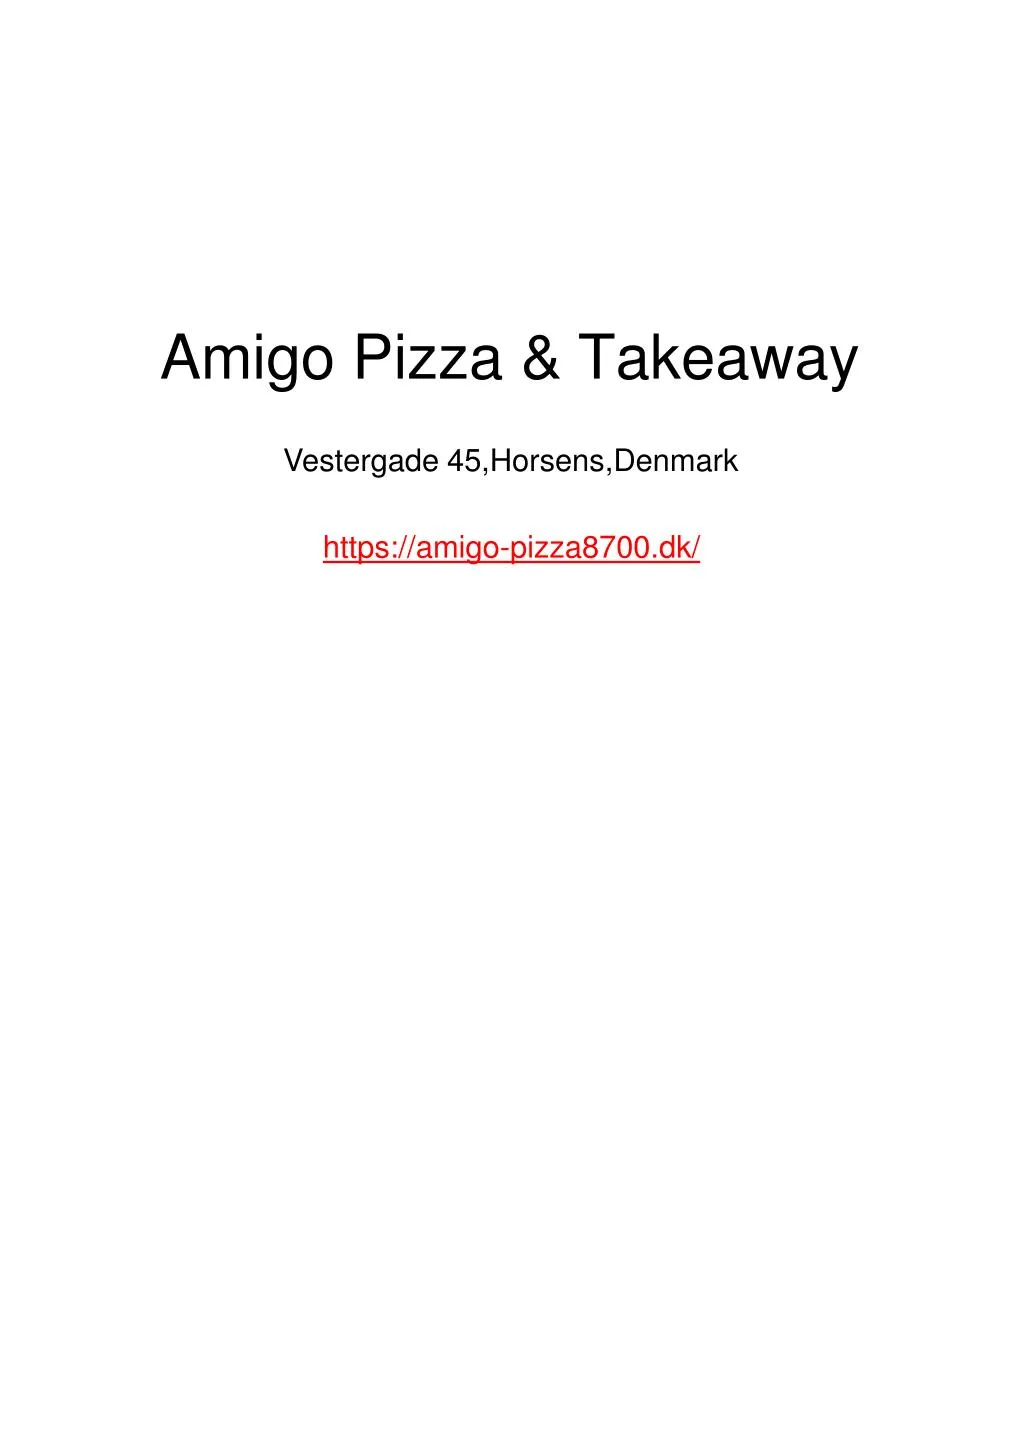 amigo pizza takeaway